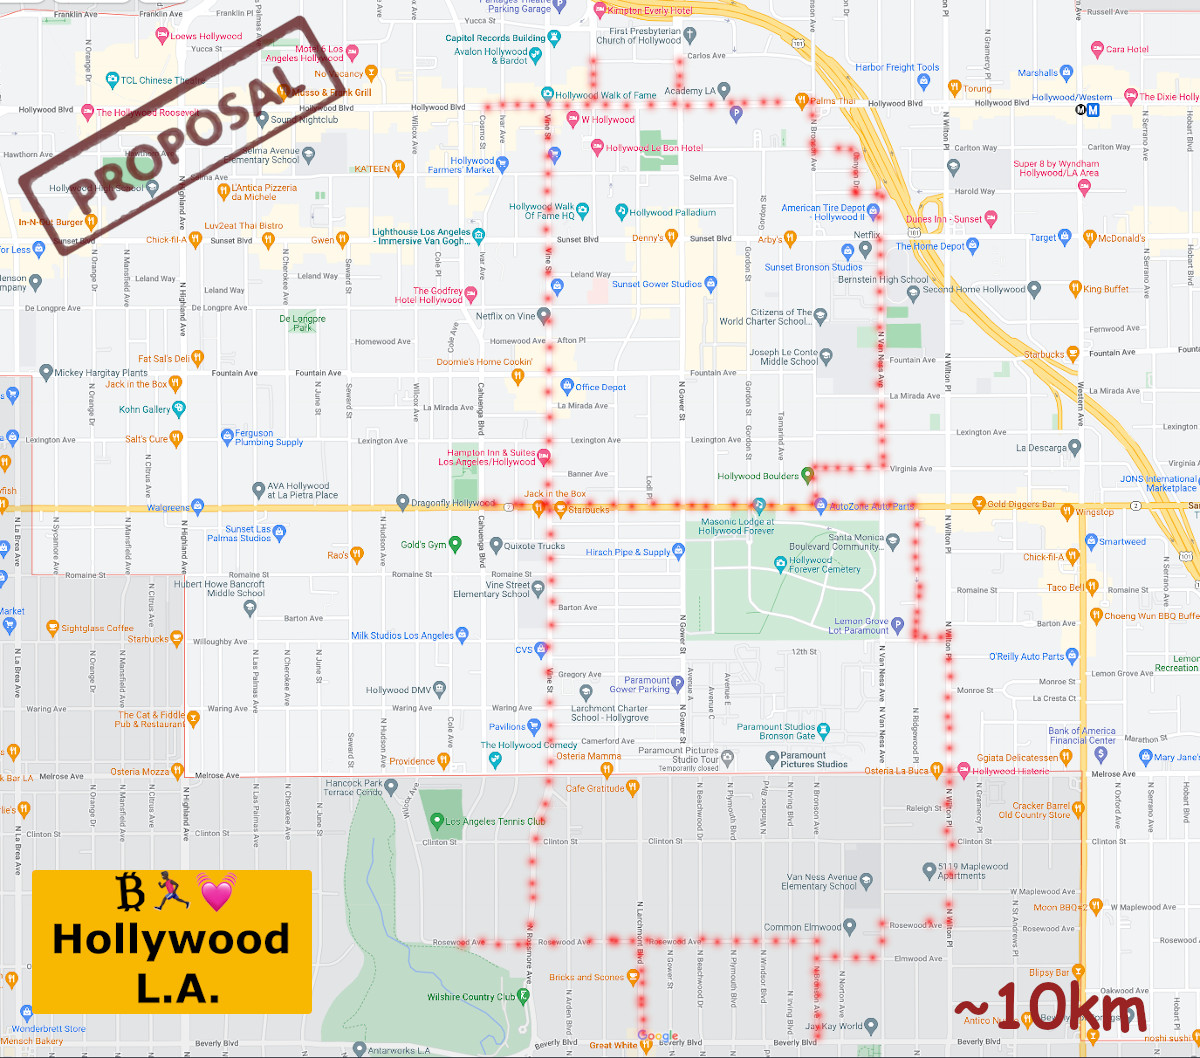 Hollywood L.A. sketch